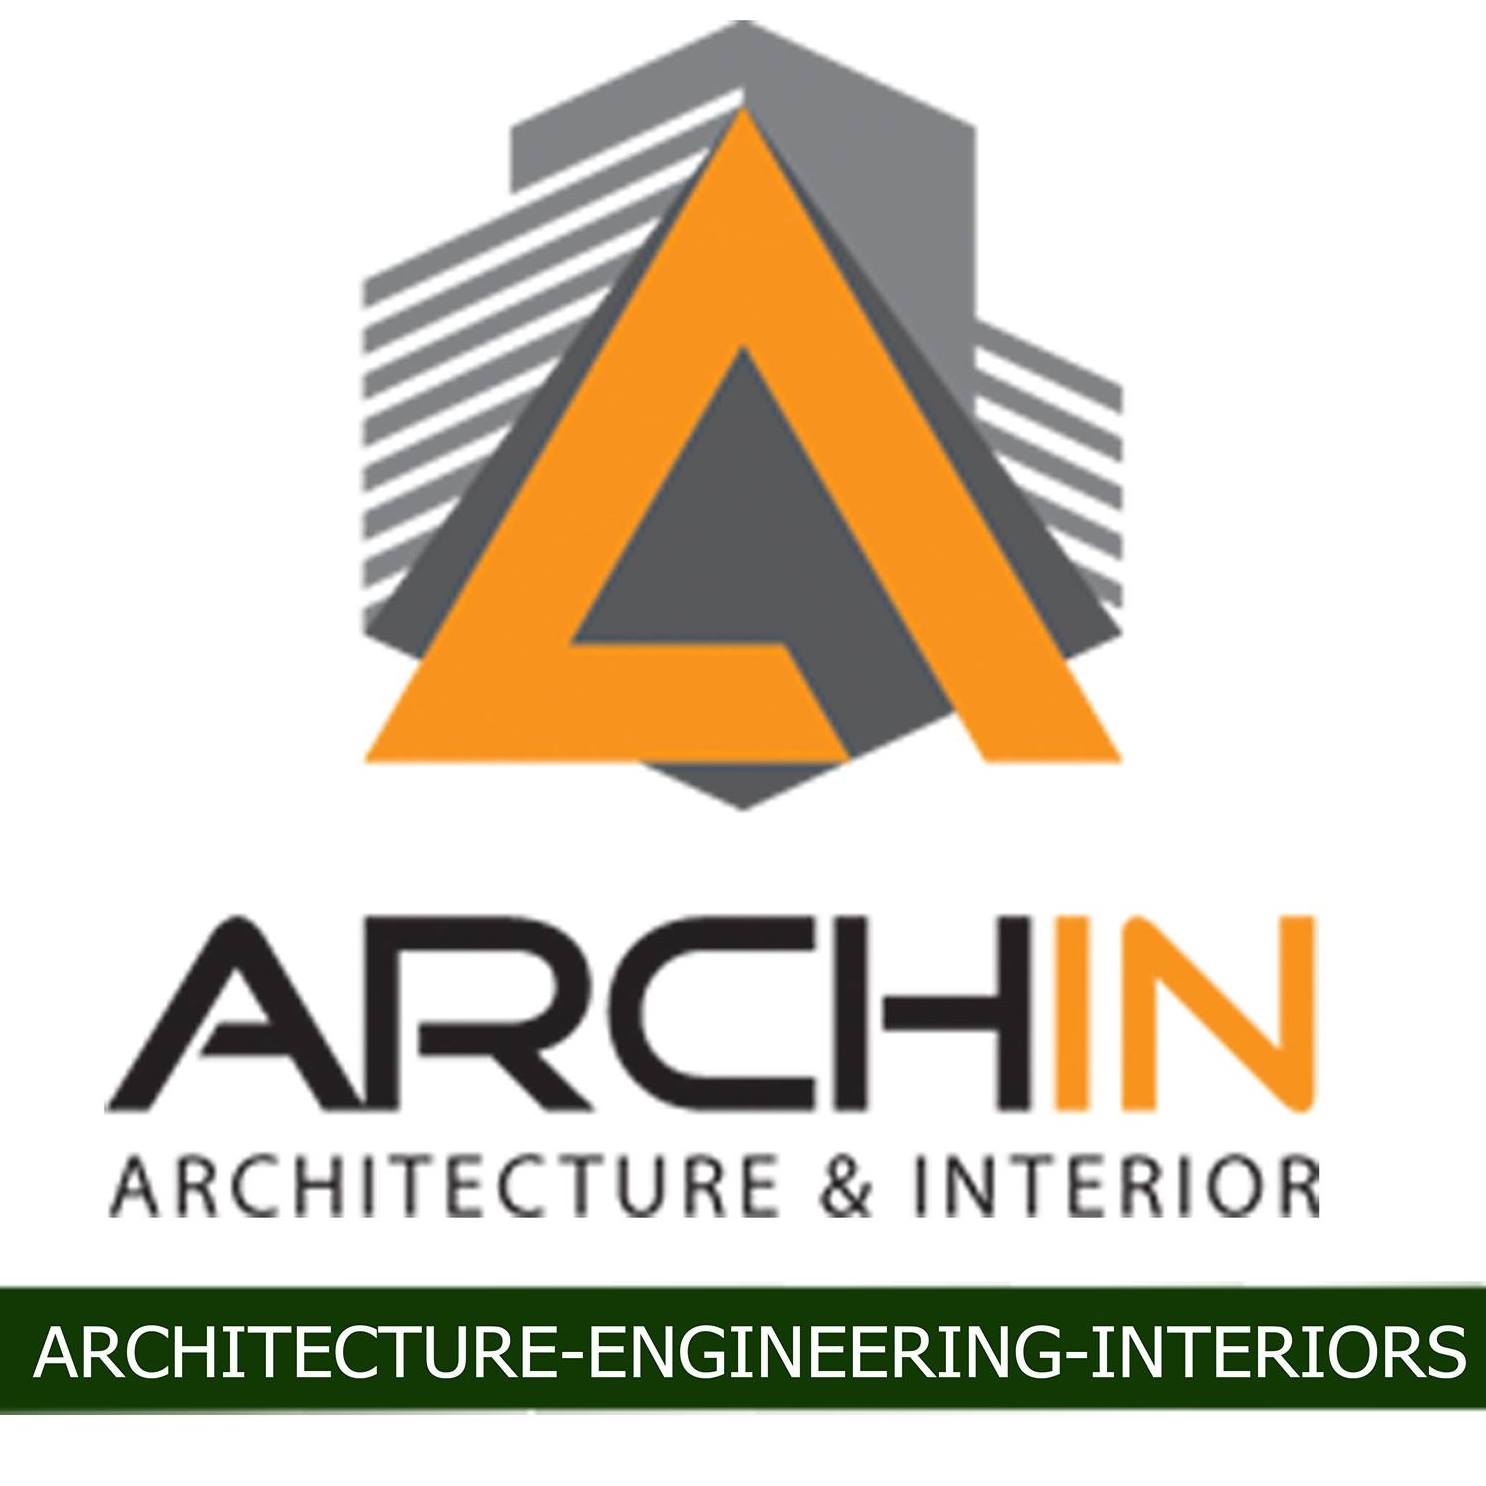 ARCHIN Architecture & Interior Studio|Legal Services|Professional Services